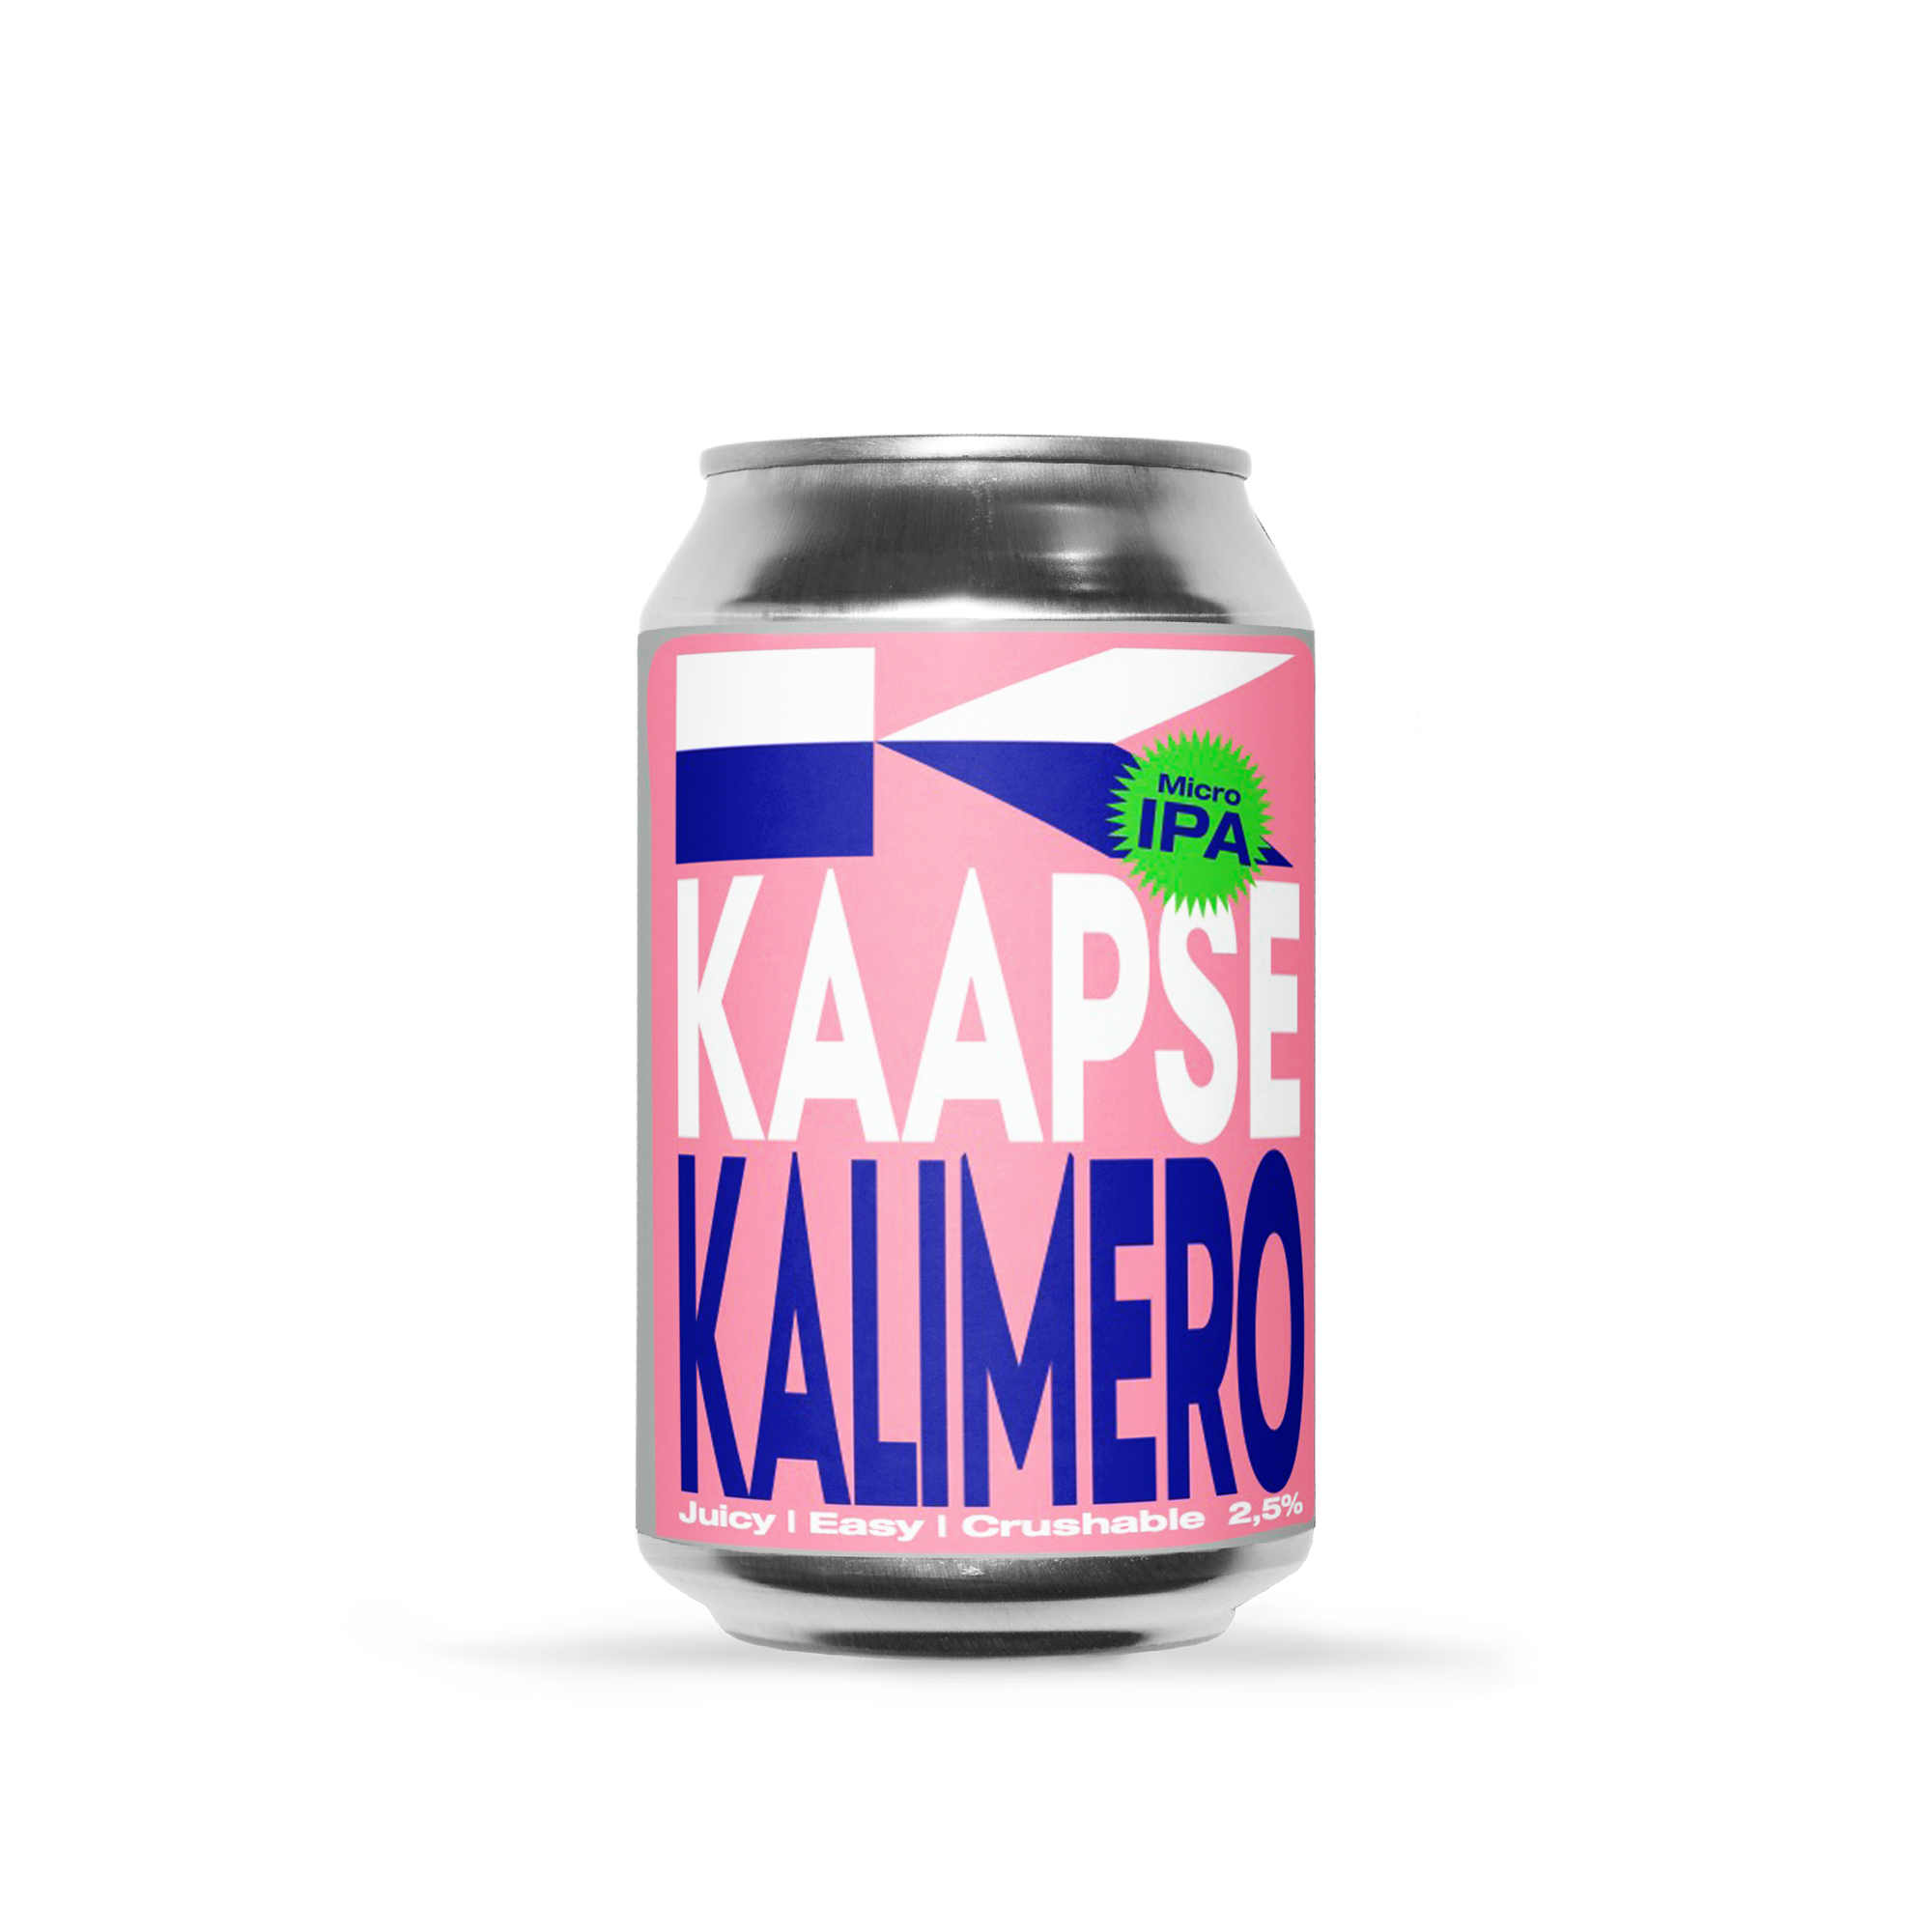 Kaapse Kalimero